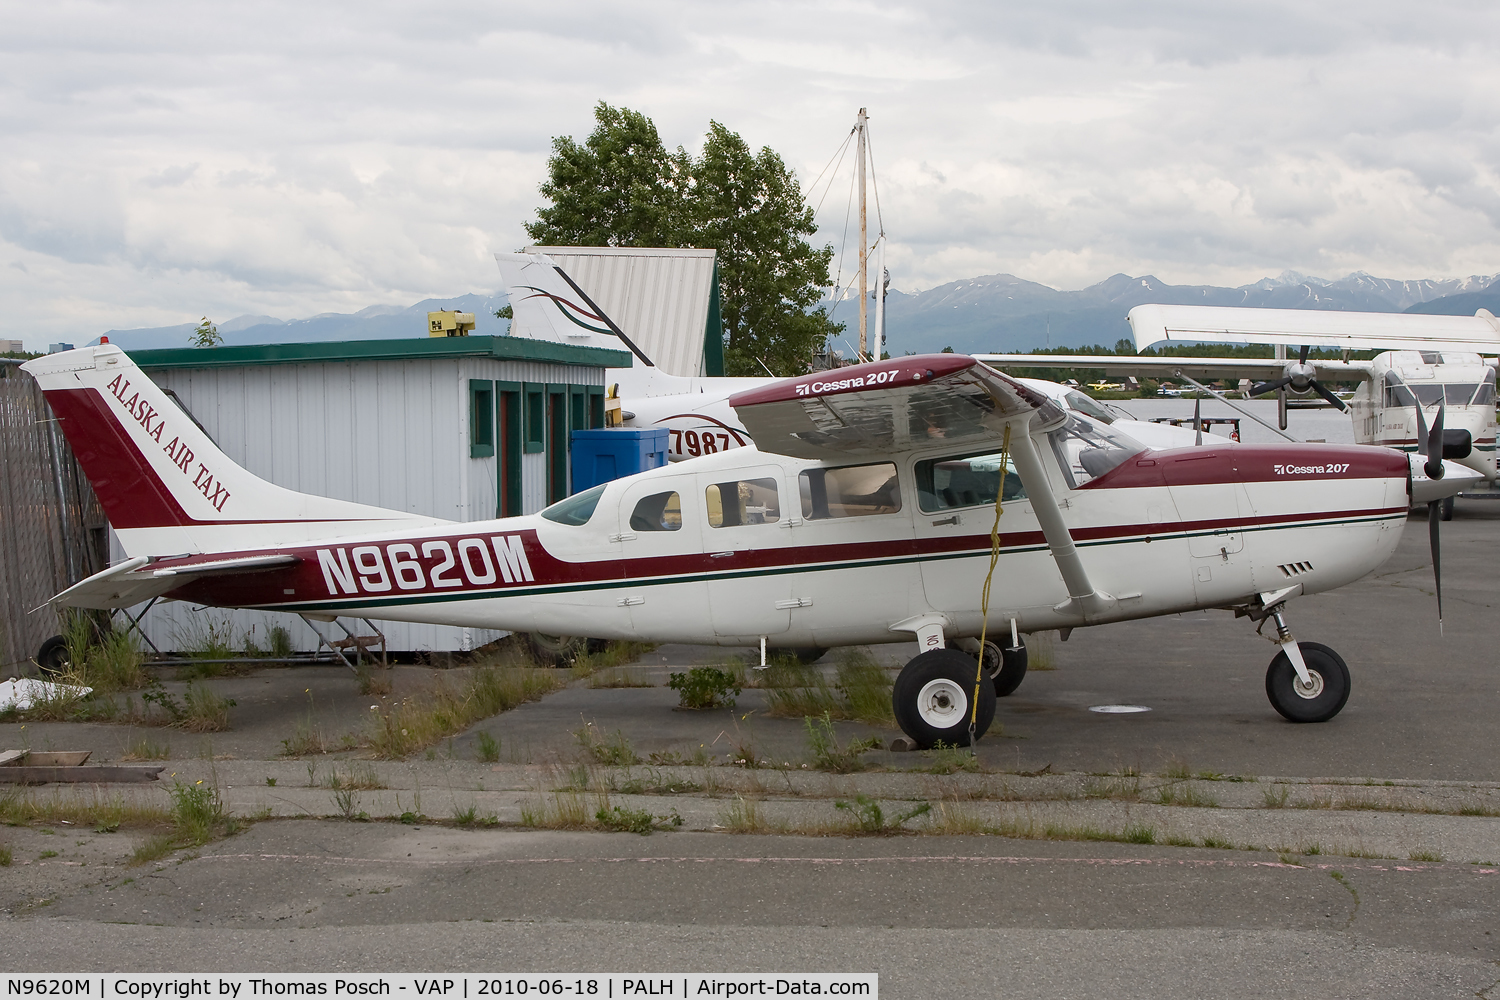 N9620M, 1981 Cessna 207A C/N 20700711, Alaska Air Taxi